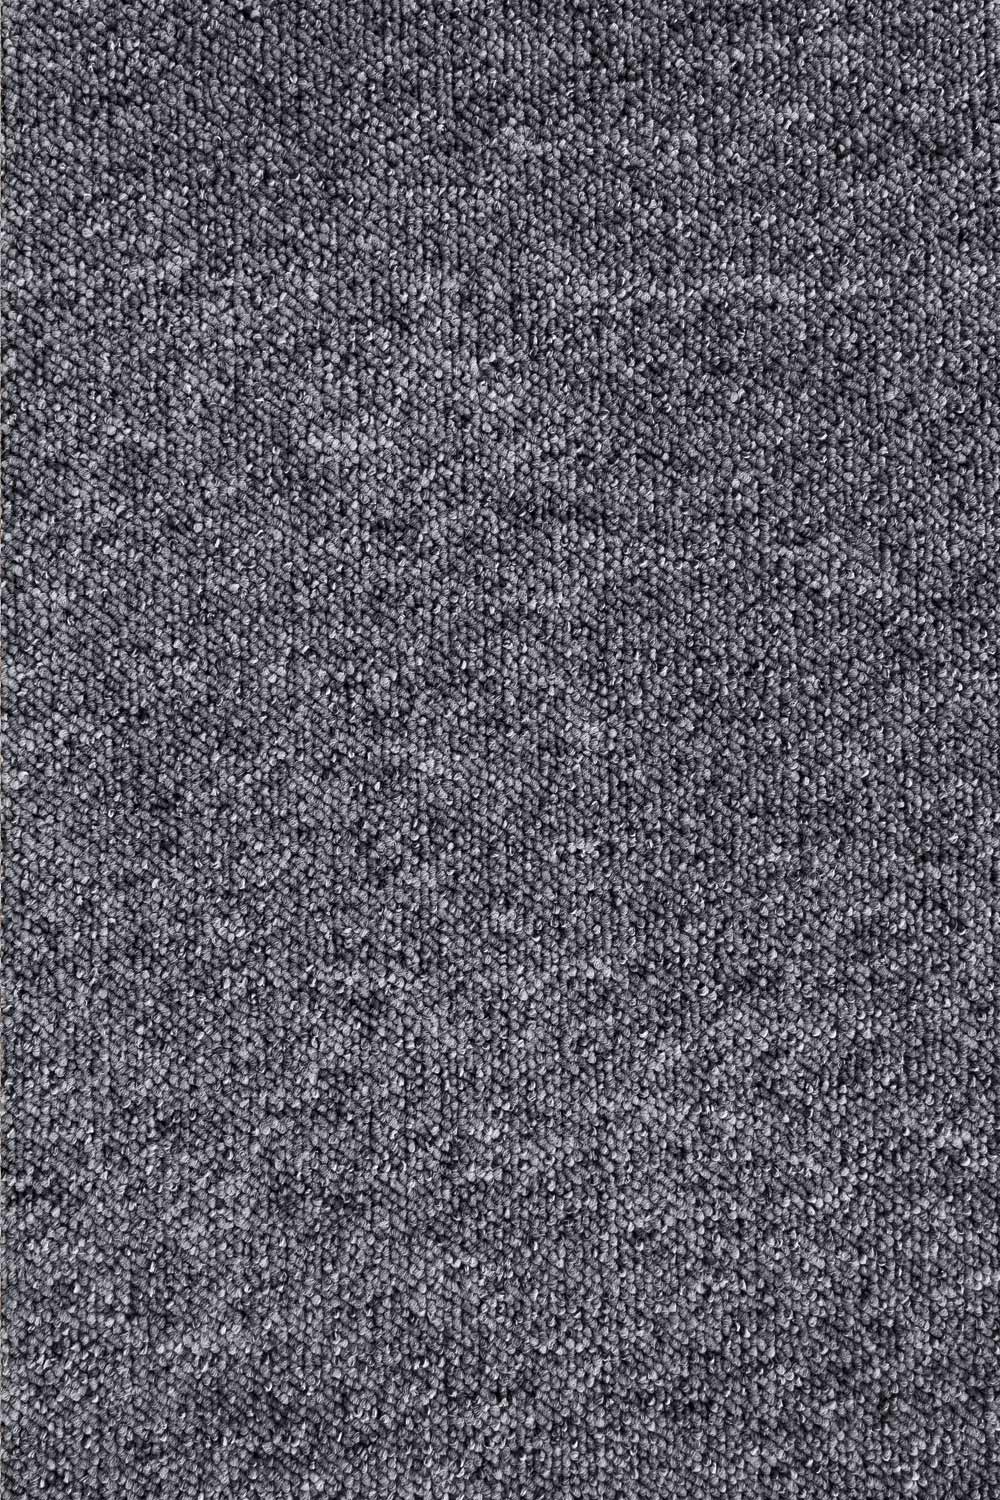 Metrážny koberec ROBSON 9628 500 cm